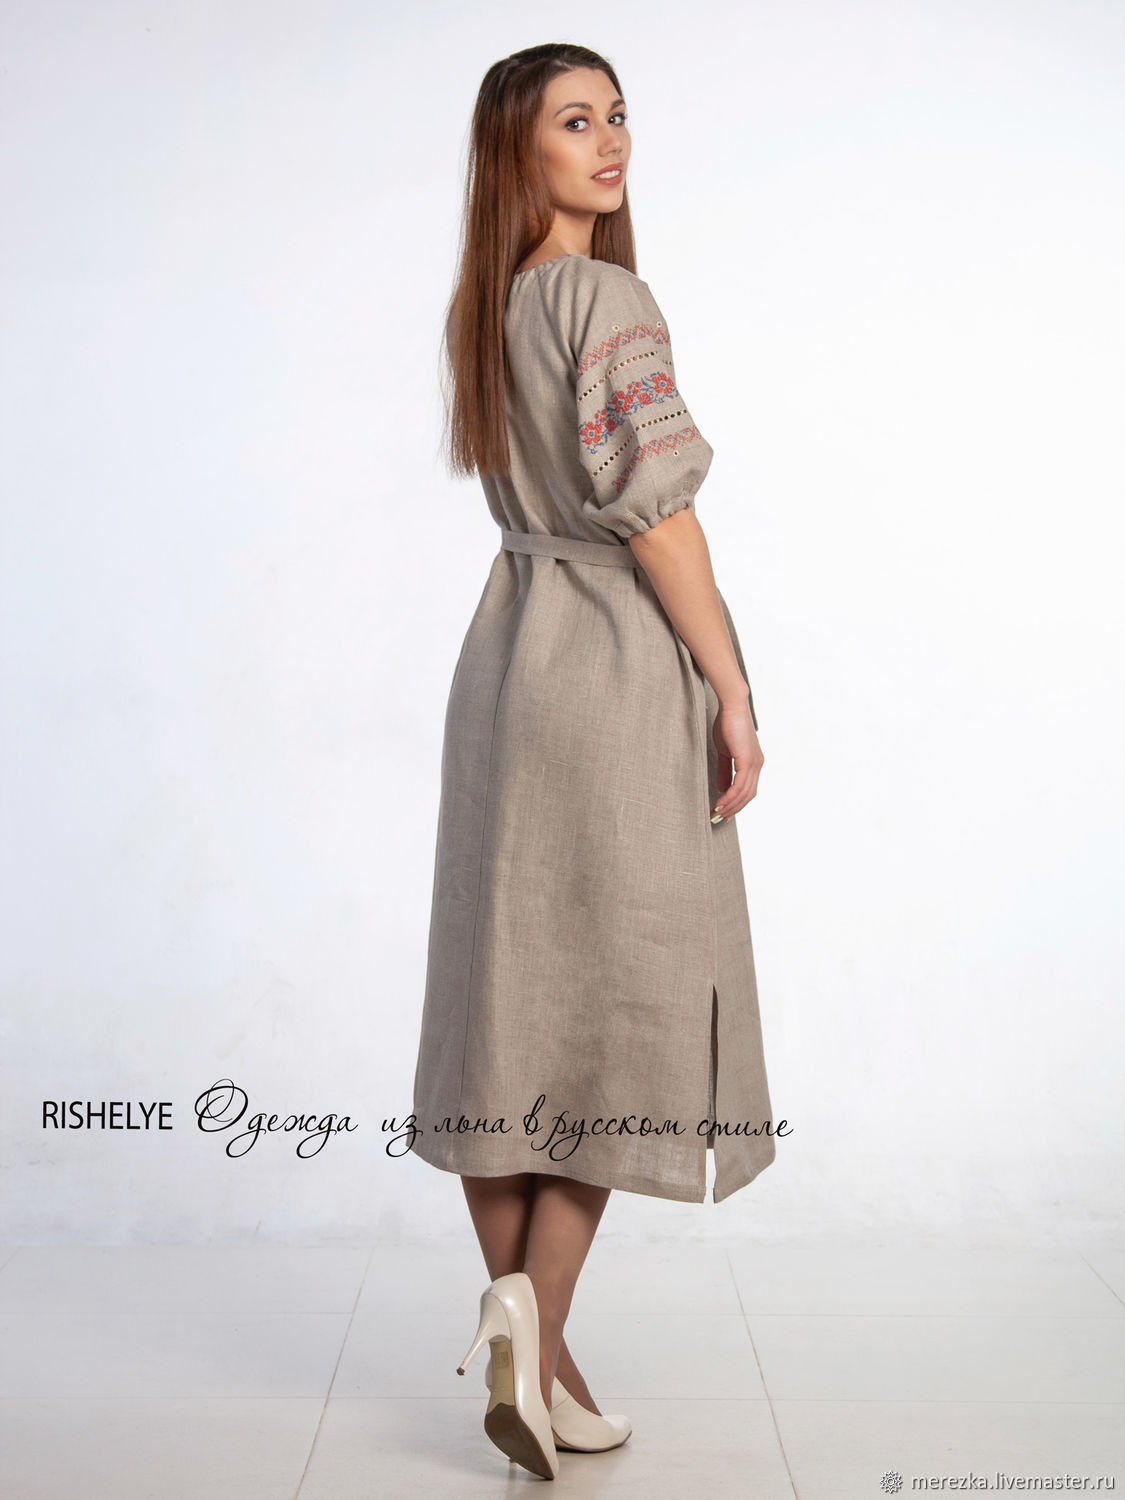 Платья из льна в русском стиле фото